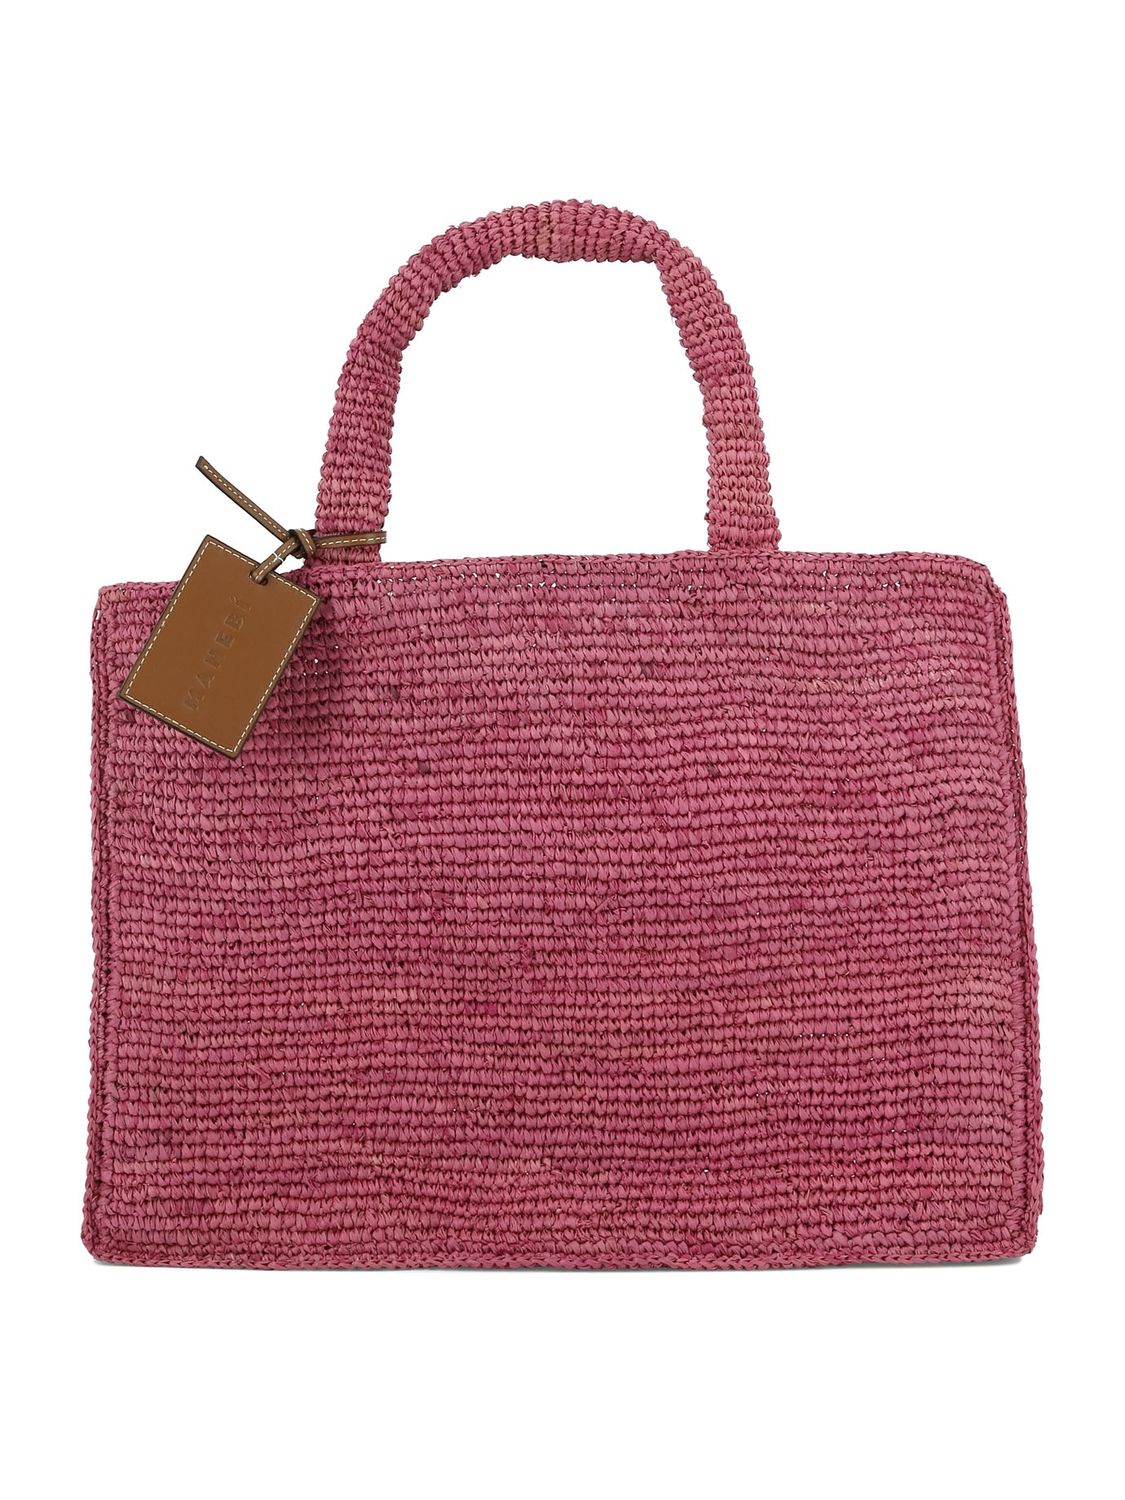 MANEBI "SUNSET LARGE" SHOULDER Handbag